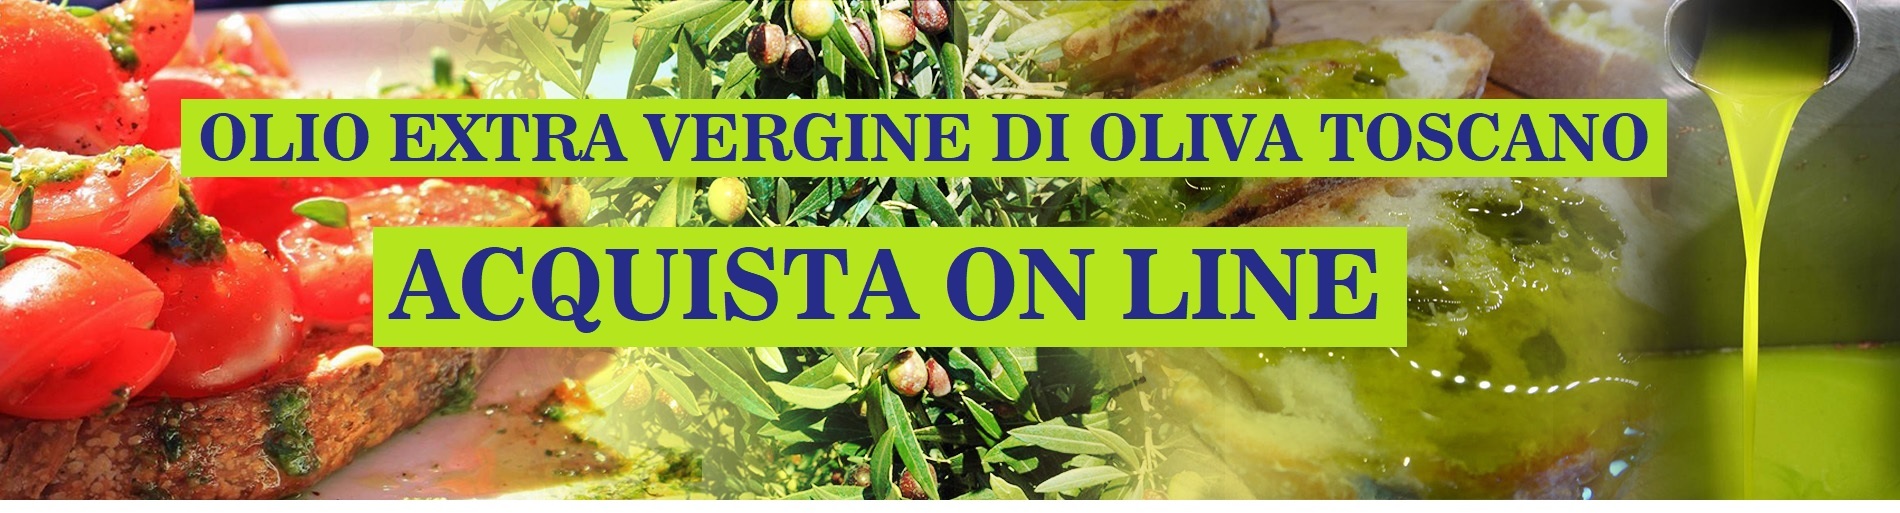 Olio Extra Vergine di Oliva Toscano - Acquista On Line